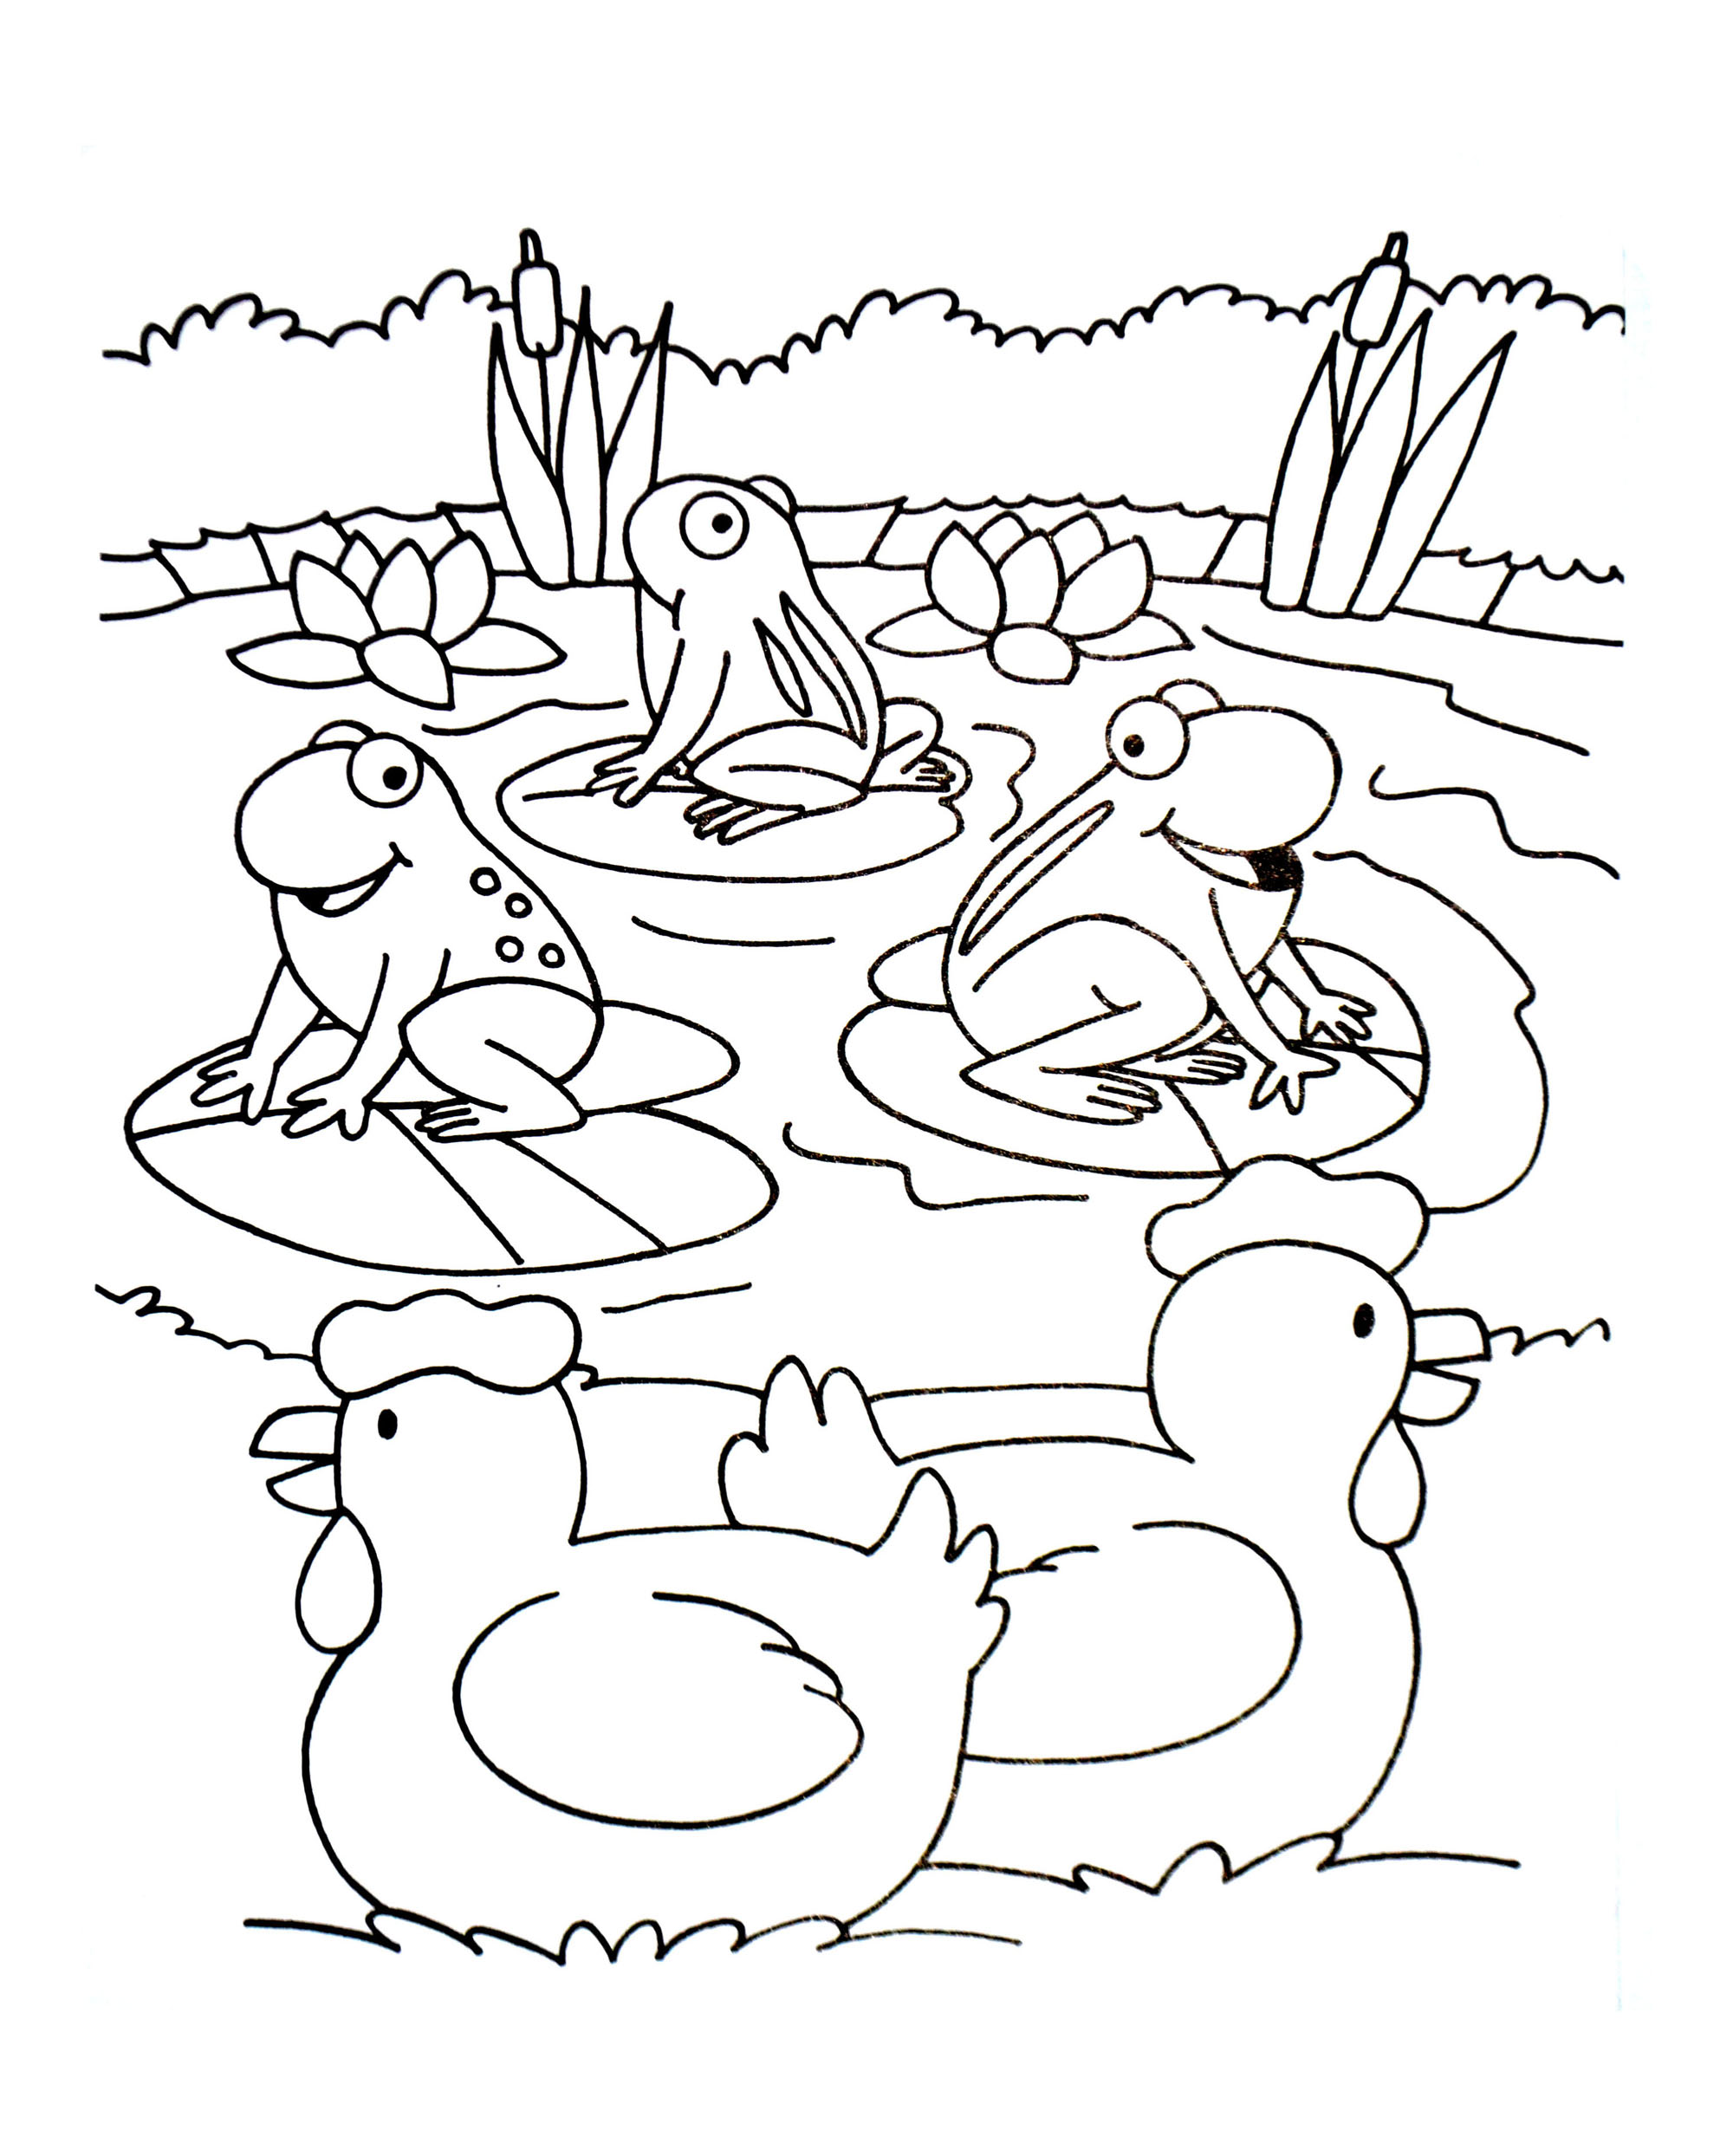 Imagem da Quinta para colorir, fácil para as crianças